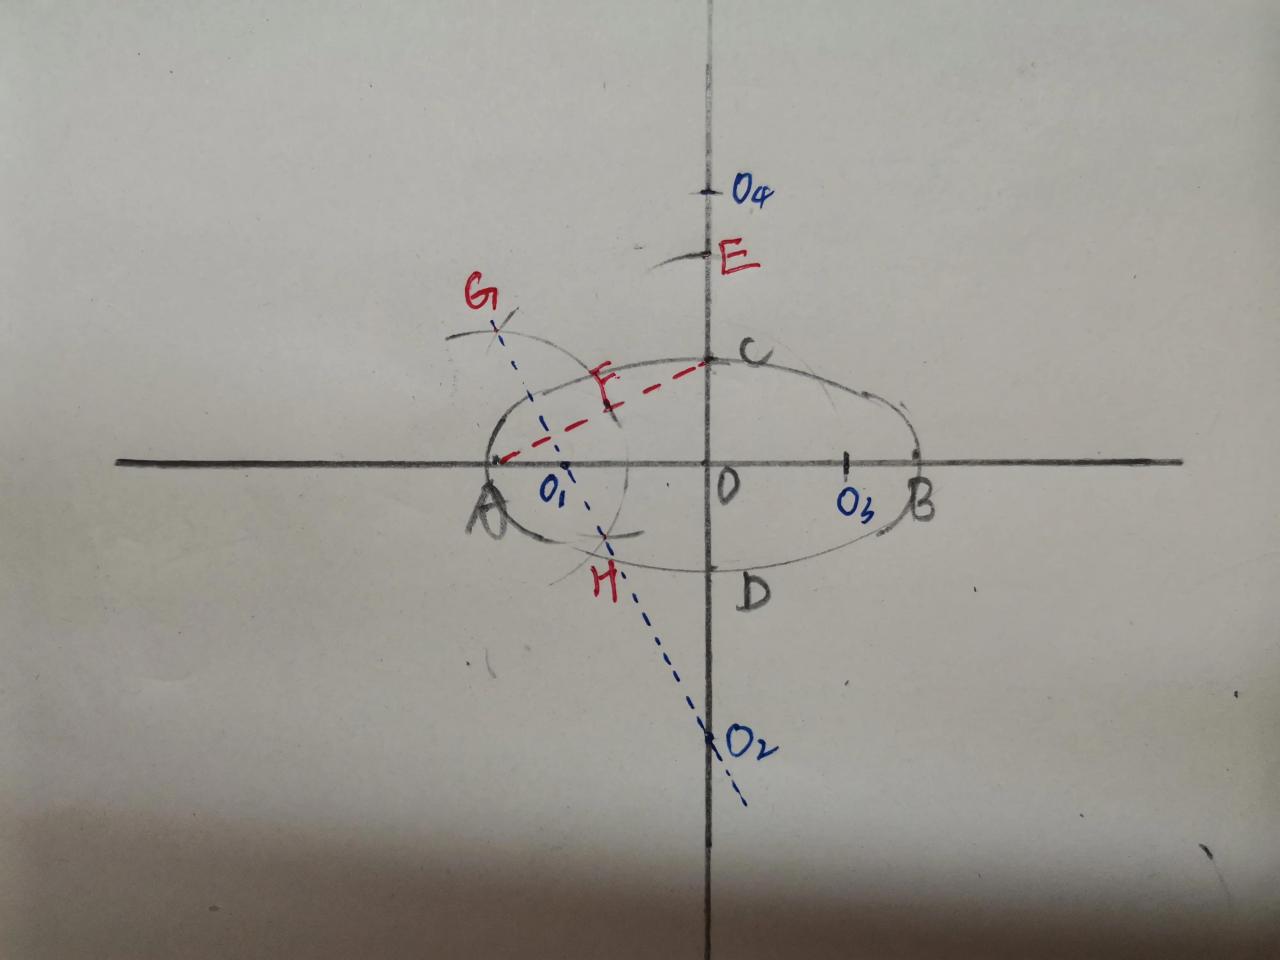 椭圆的画法(四心圆法画椭圆。)